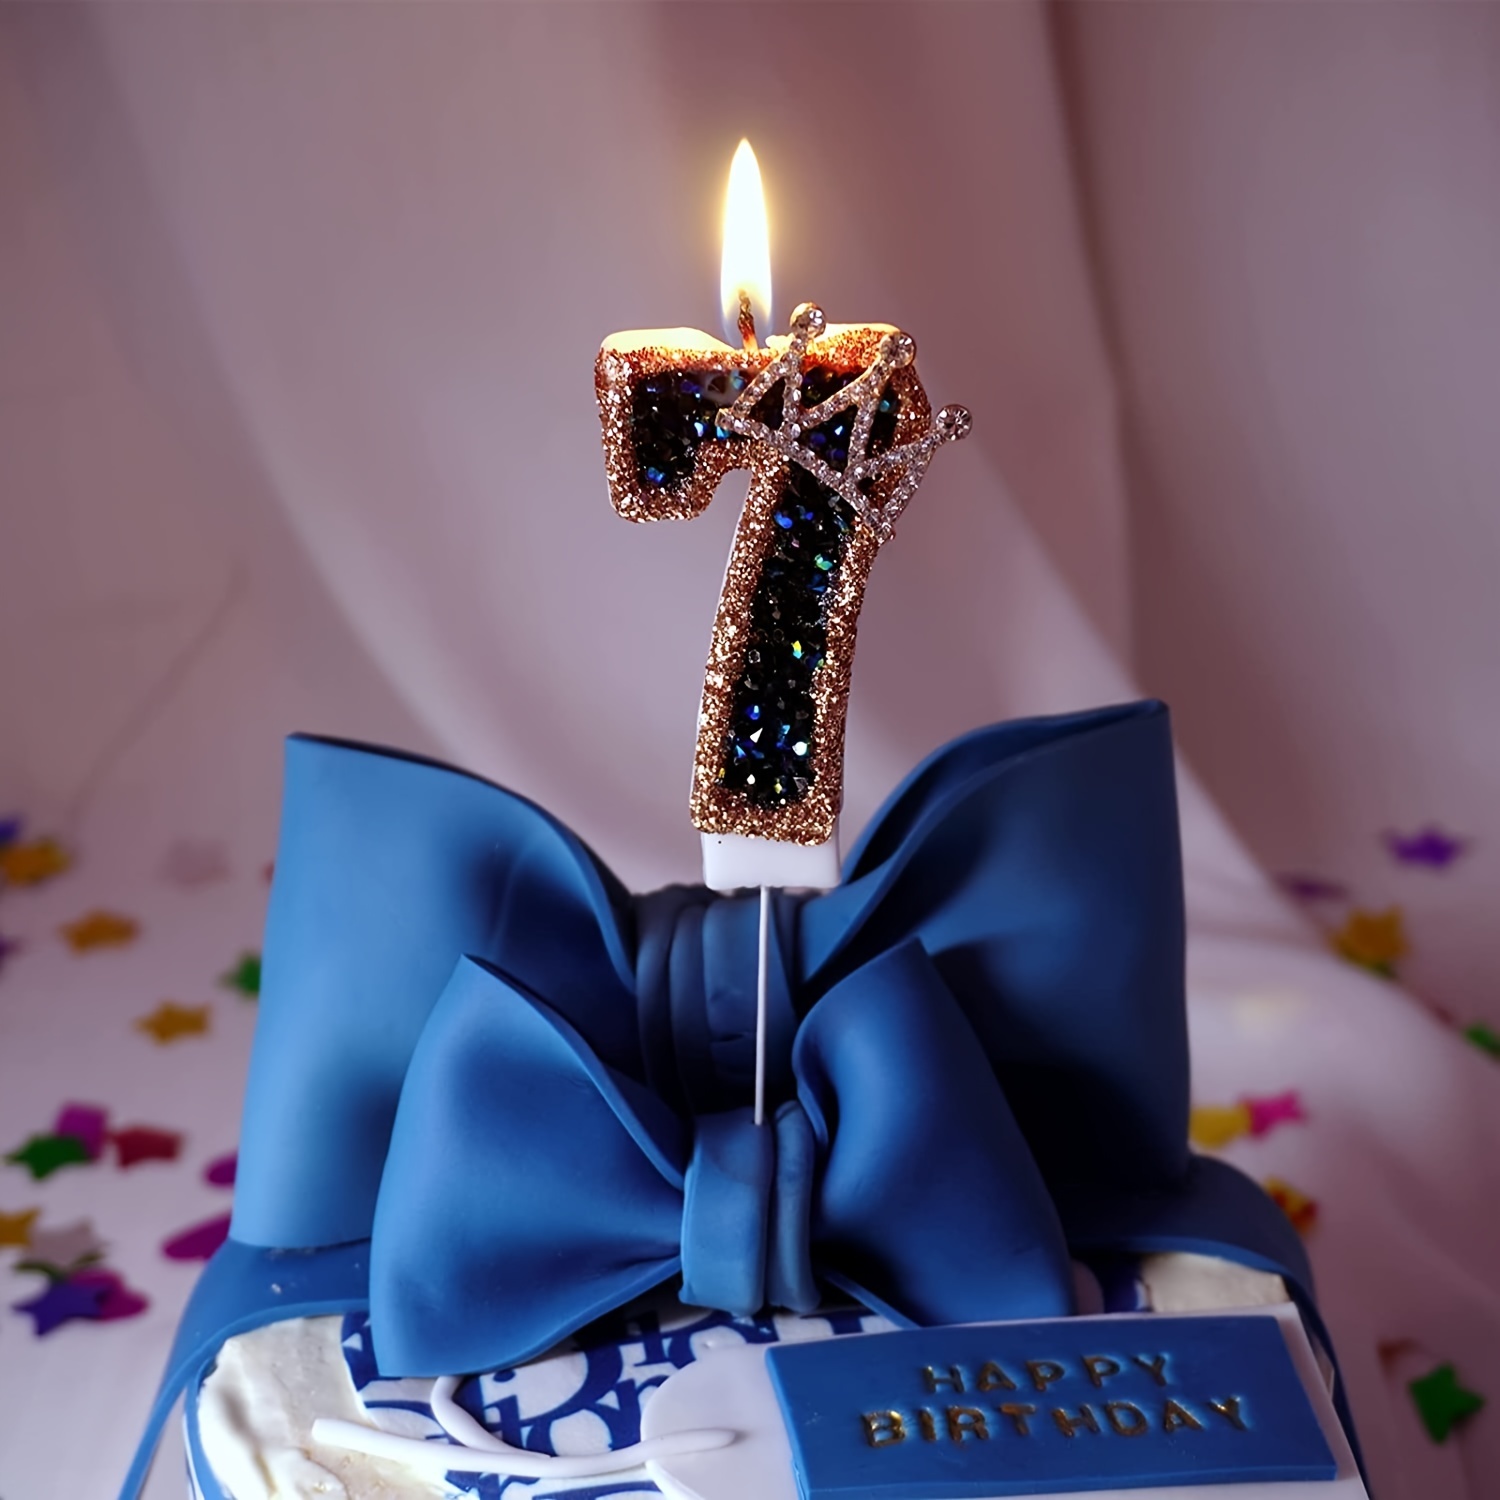 CHANDELLE 8 ANS - FÊTES / Chandelles d'anniversaire (bougies)